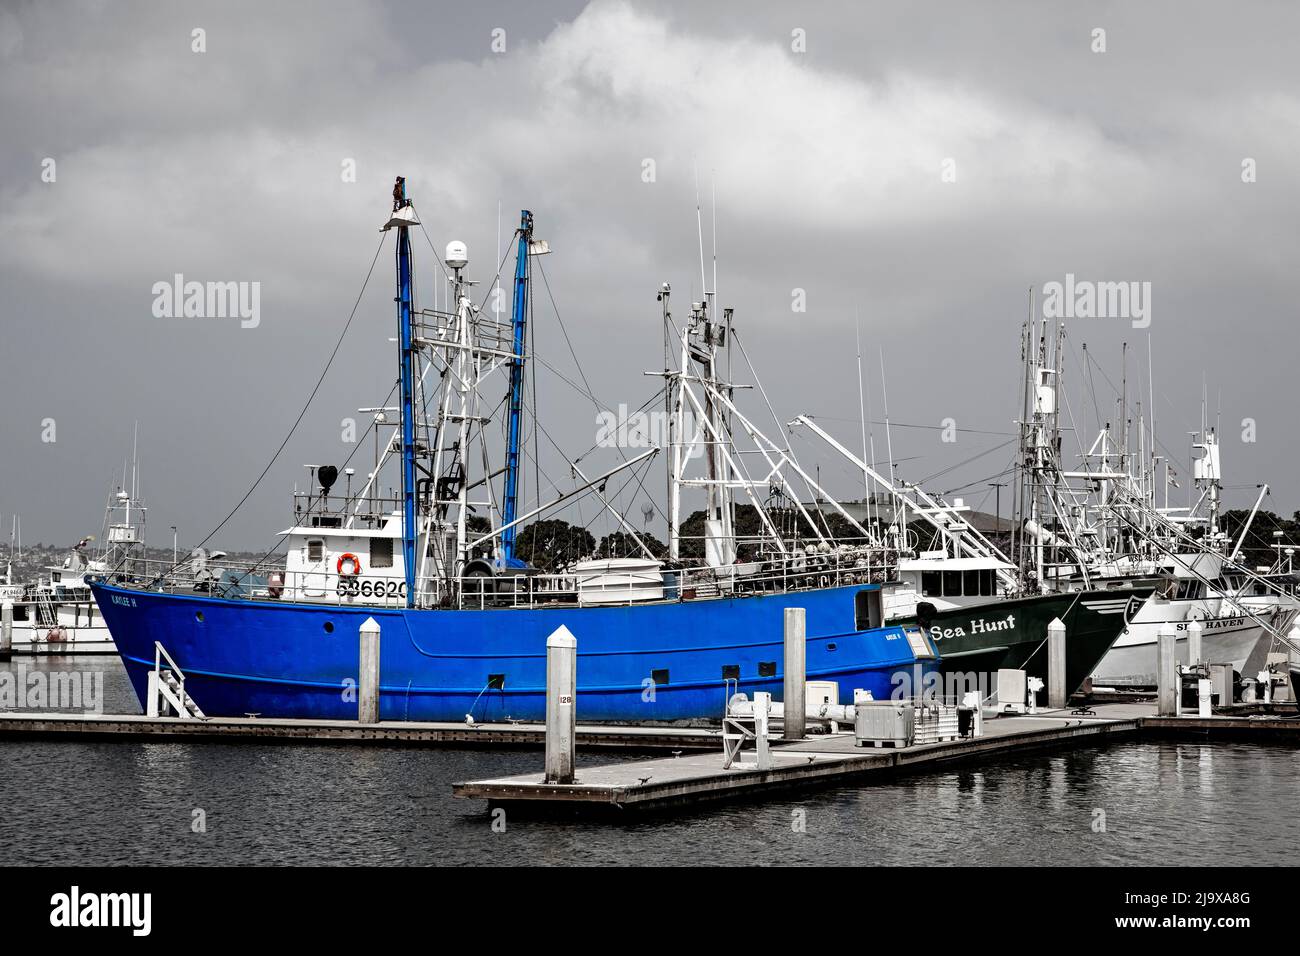 Puerto de atún, San Diego, California, EE.UU. Foto de stock